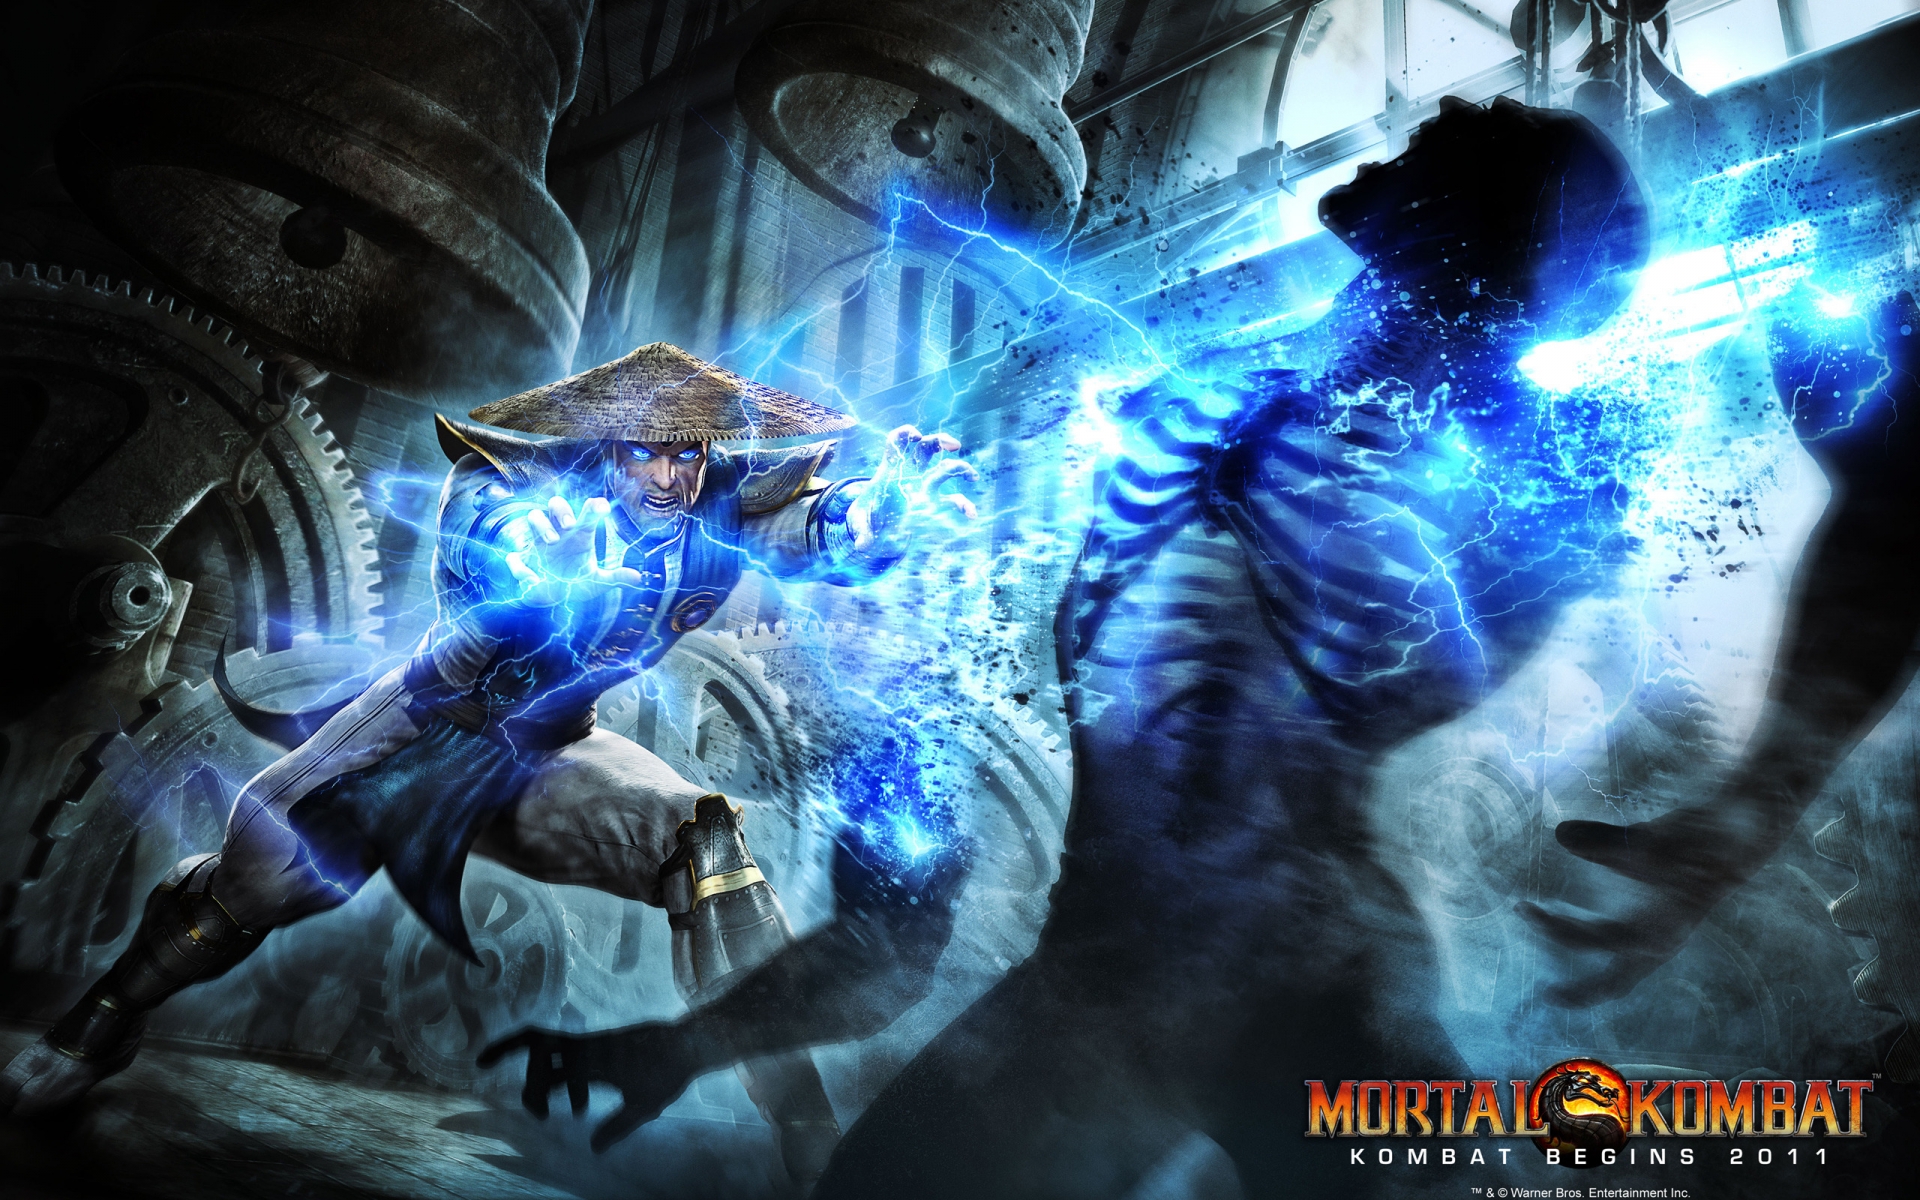 Mortal Kombat Raiden for 1920 x 1200 widescreen resolution